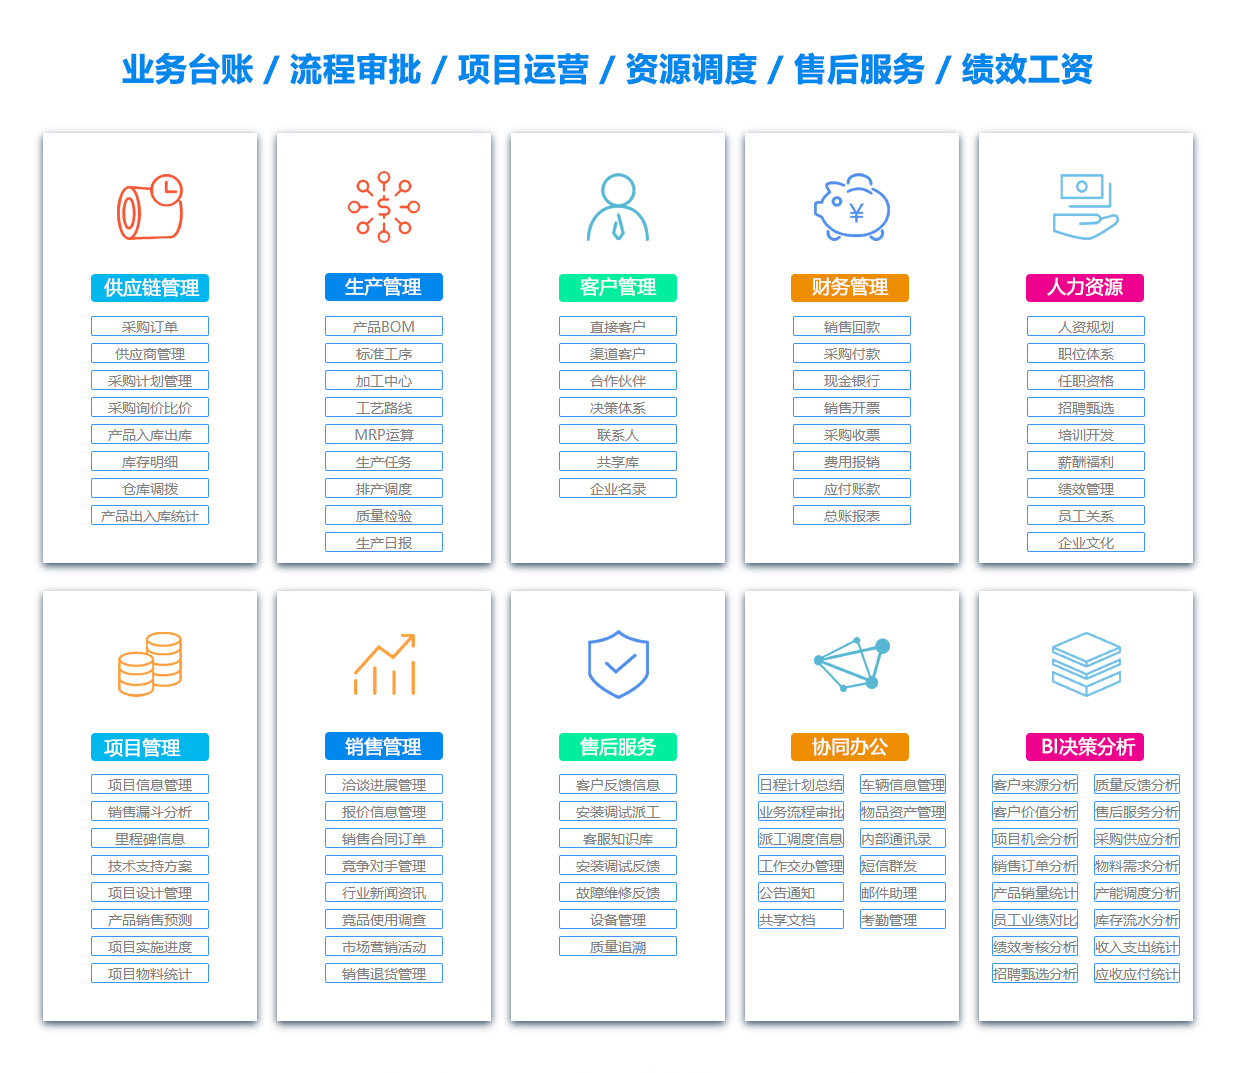 杭州客户资料管理系统